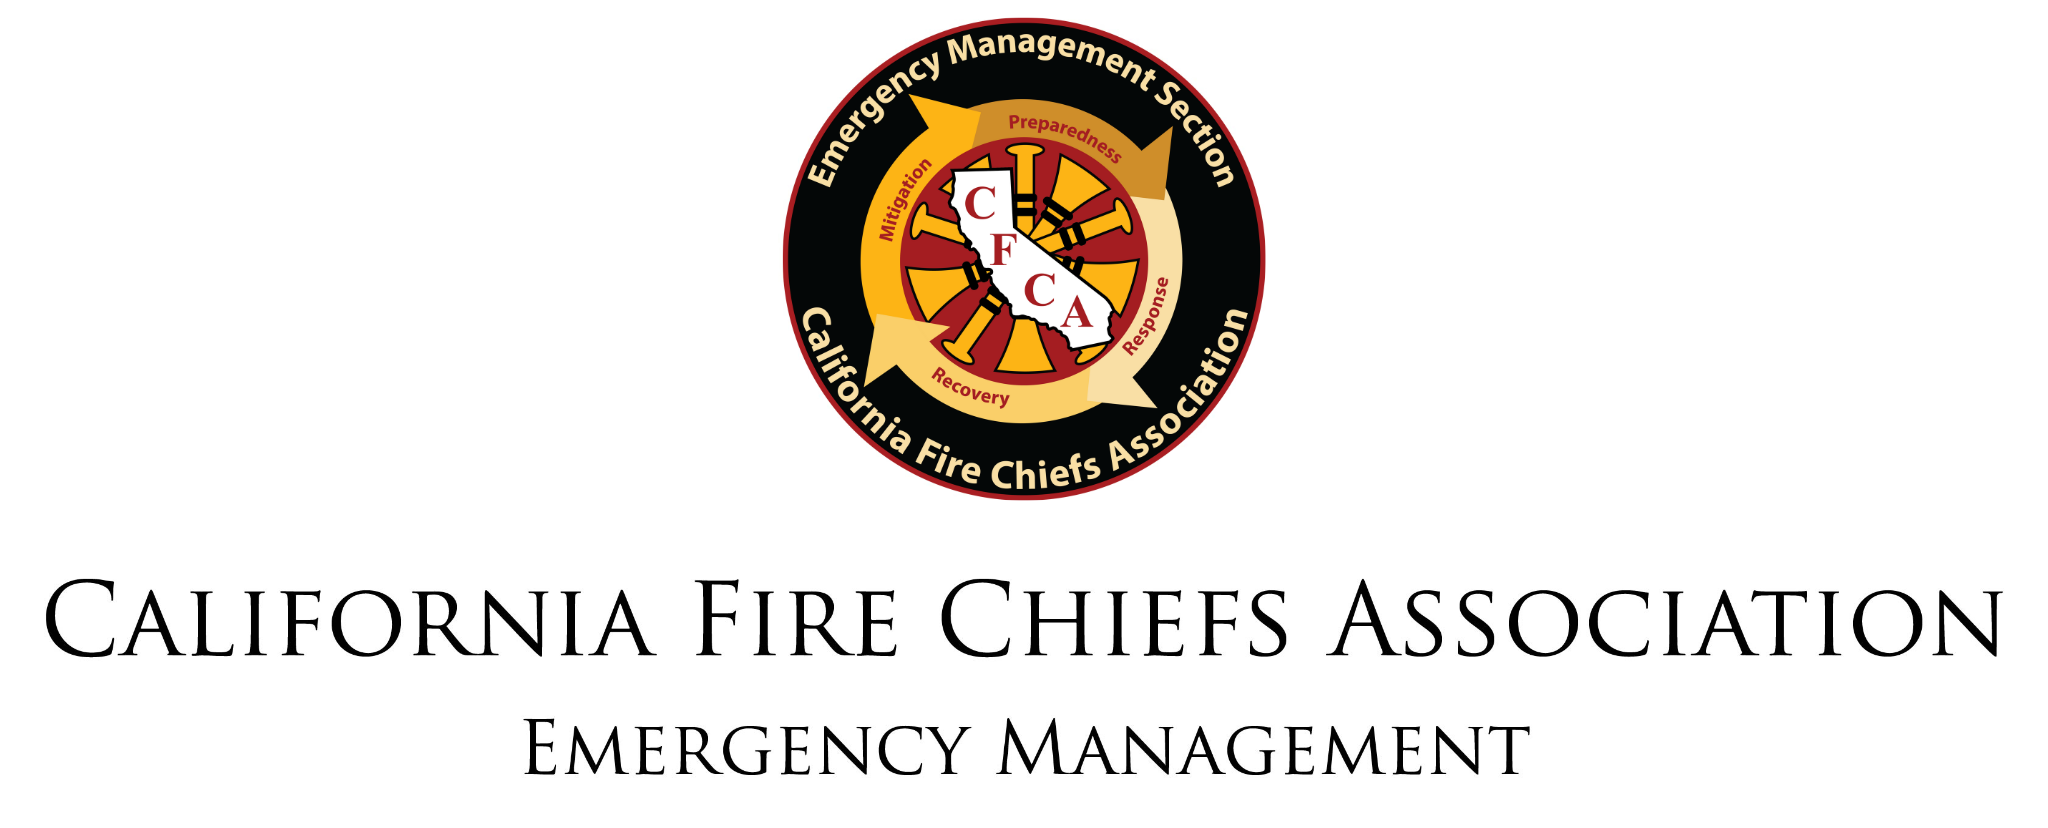 California Fire Chiefs Association - Emergency Management